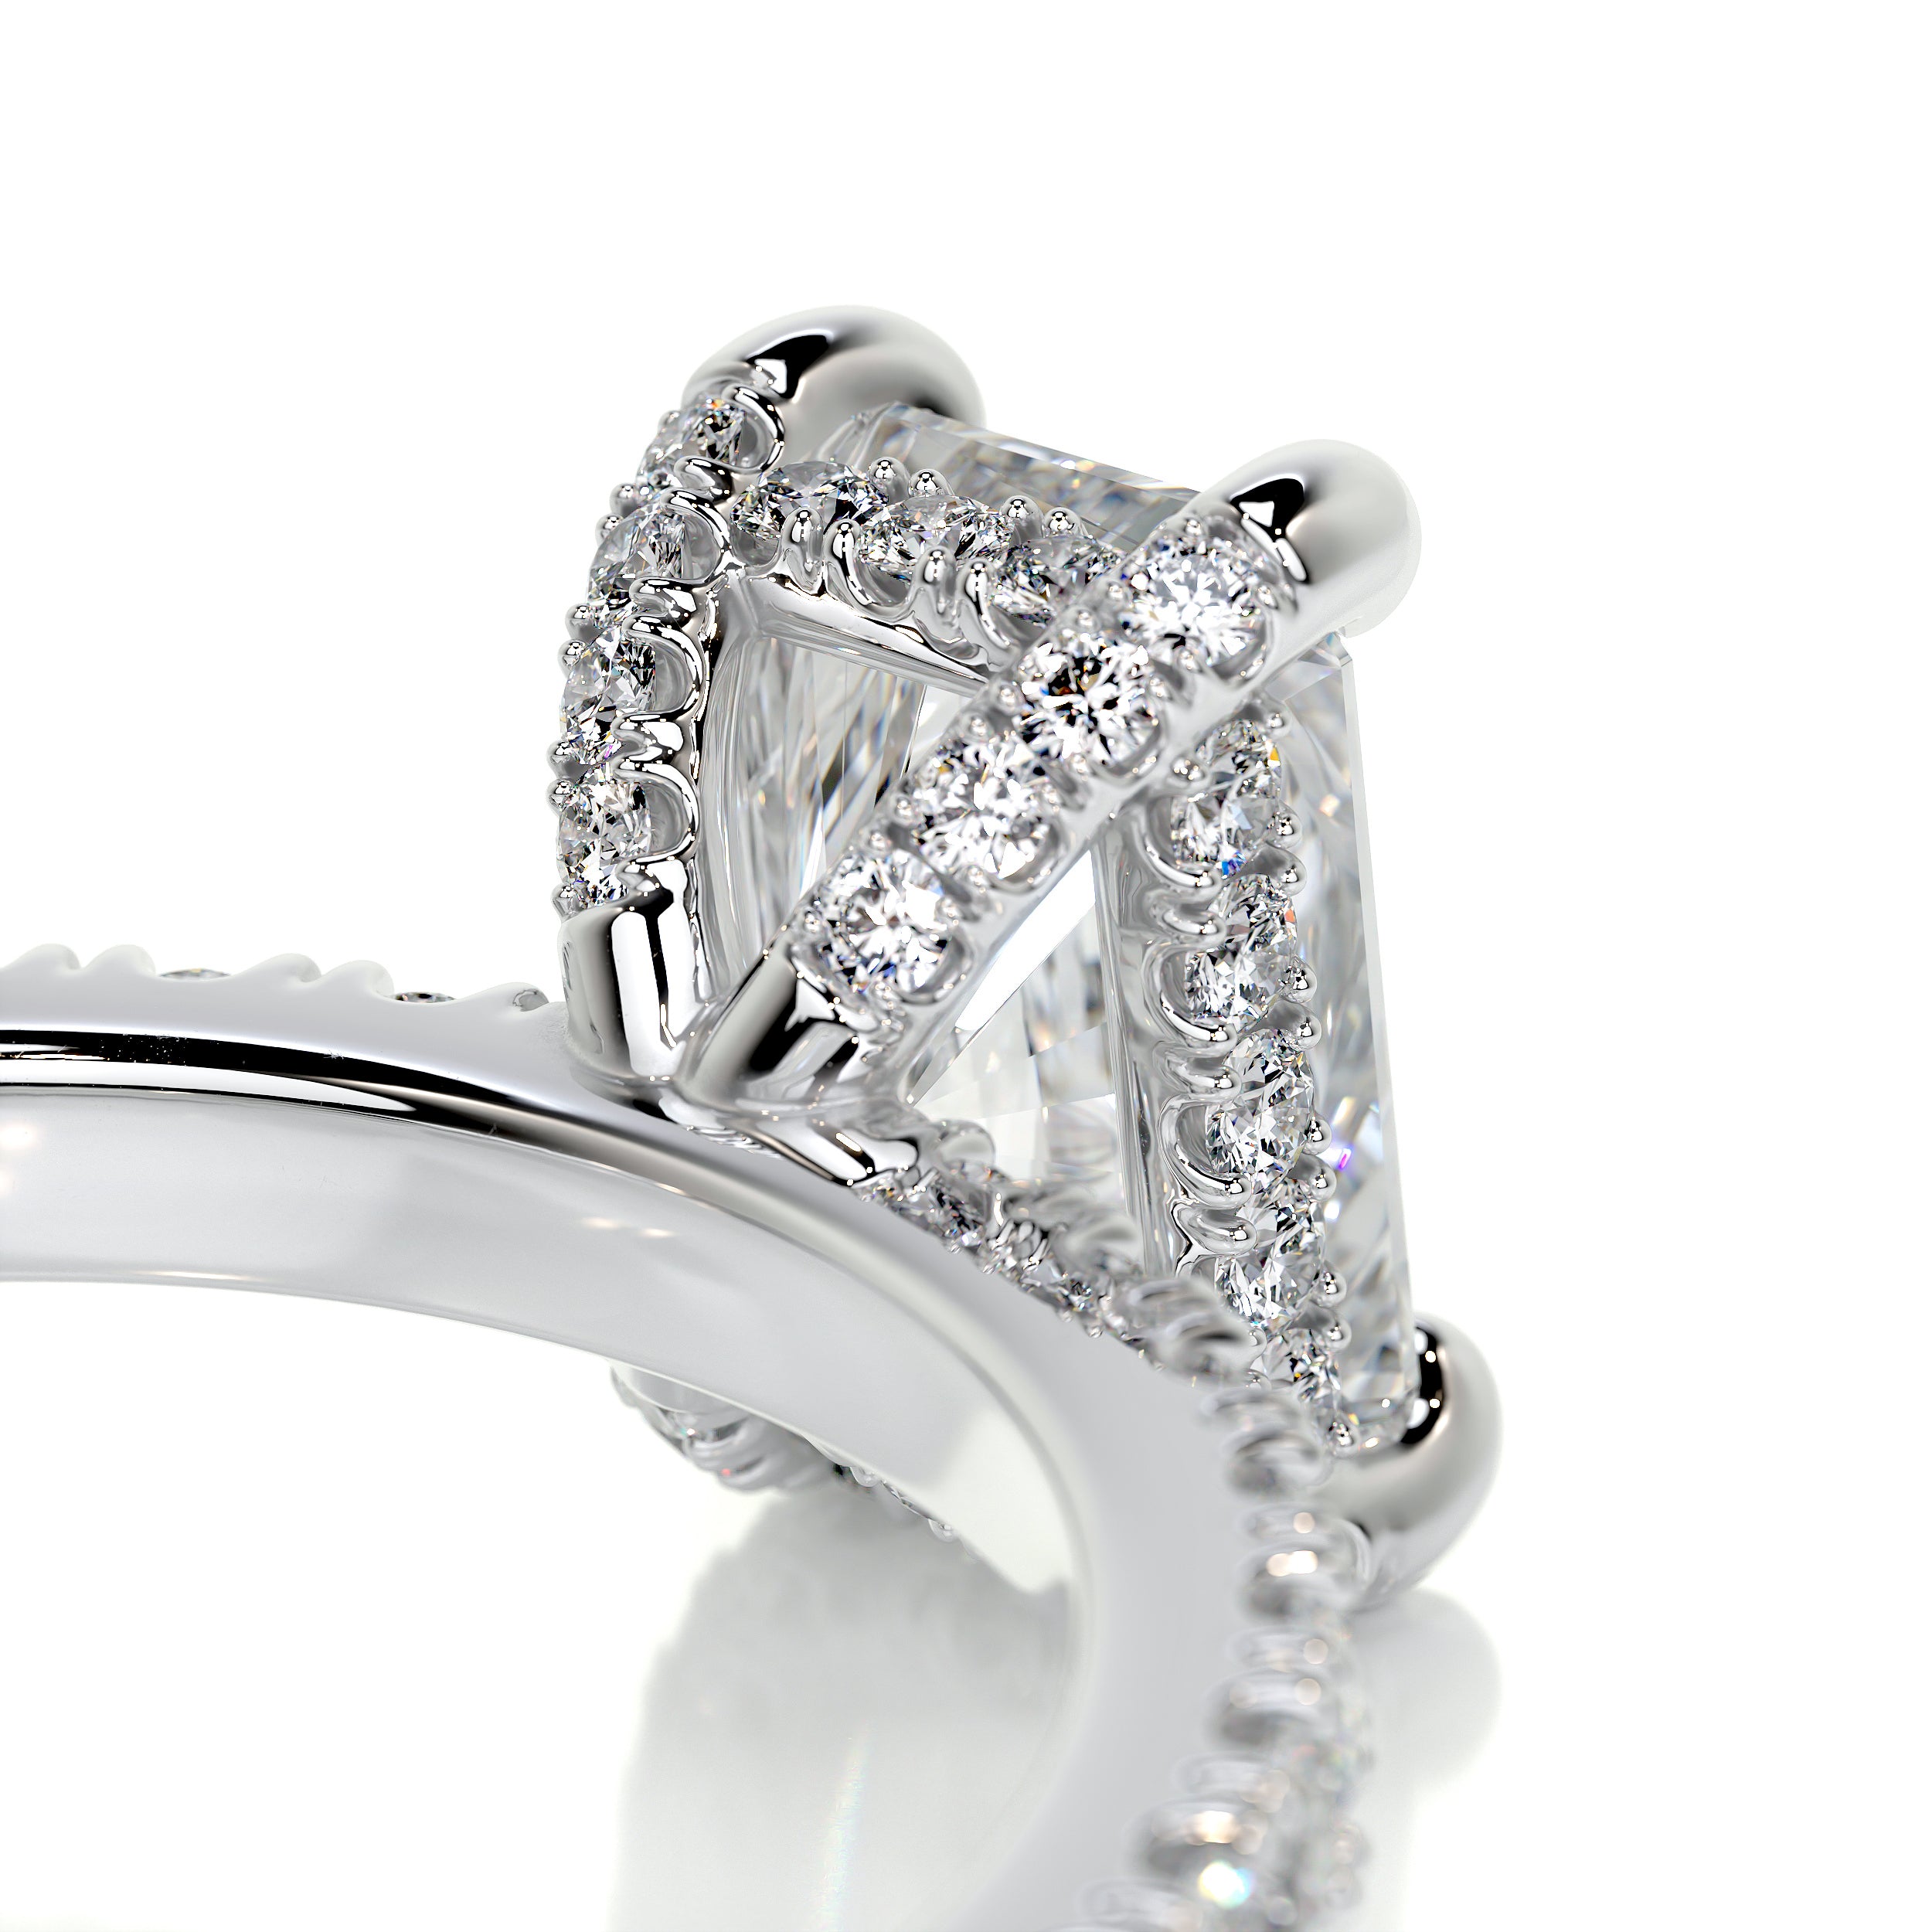 Deborah Diamond Engagement Ring   (1.5 Carat) -14K White Gold